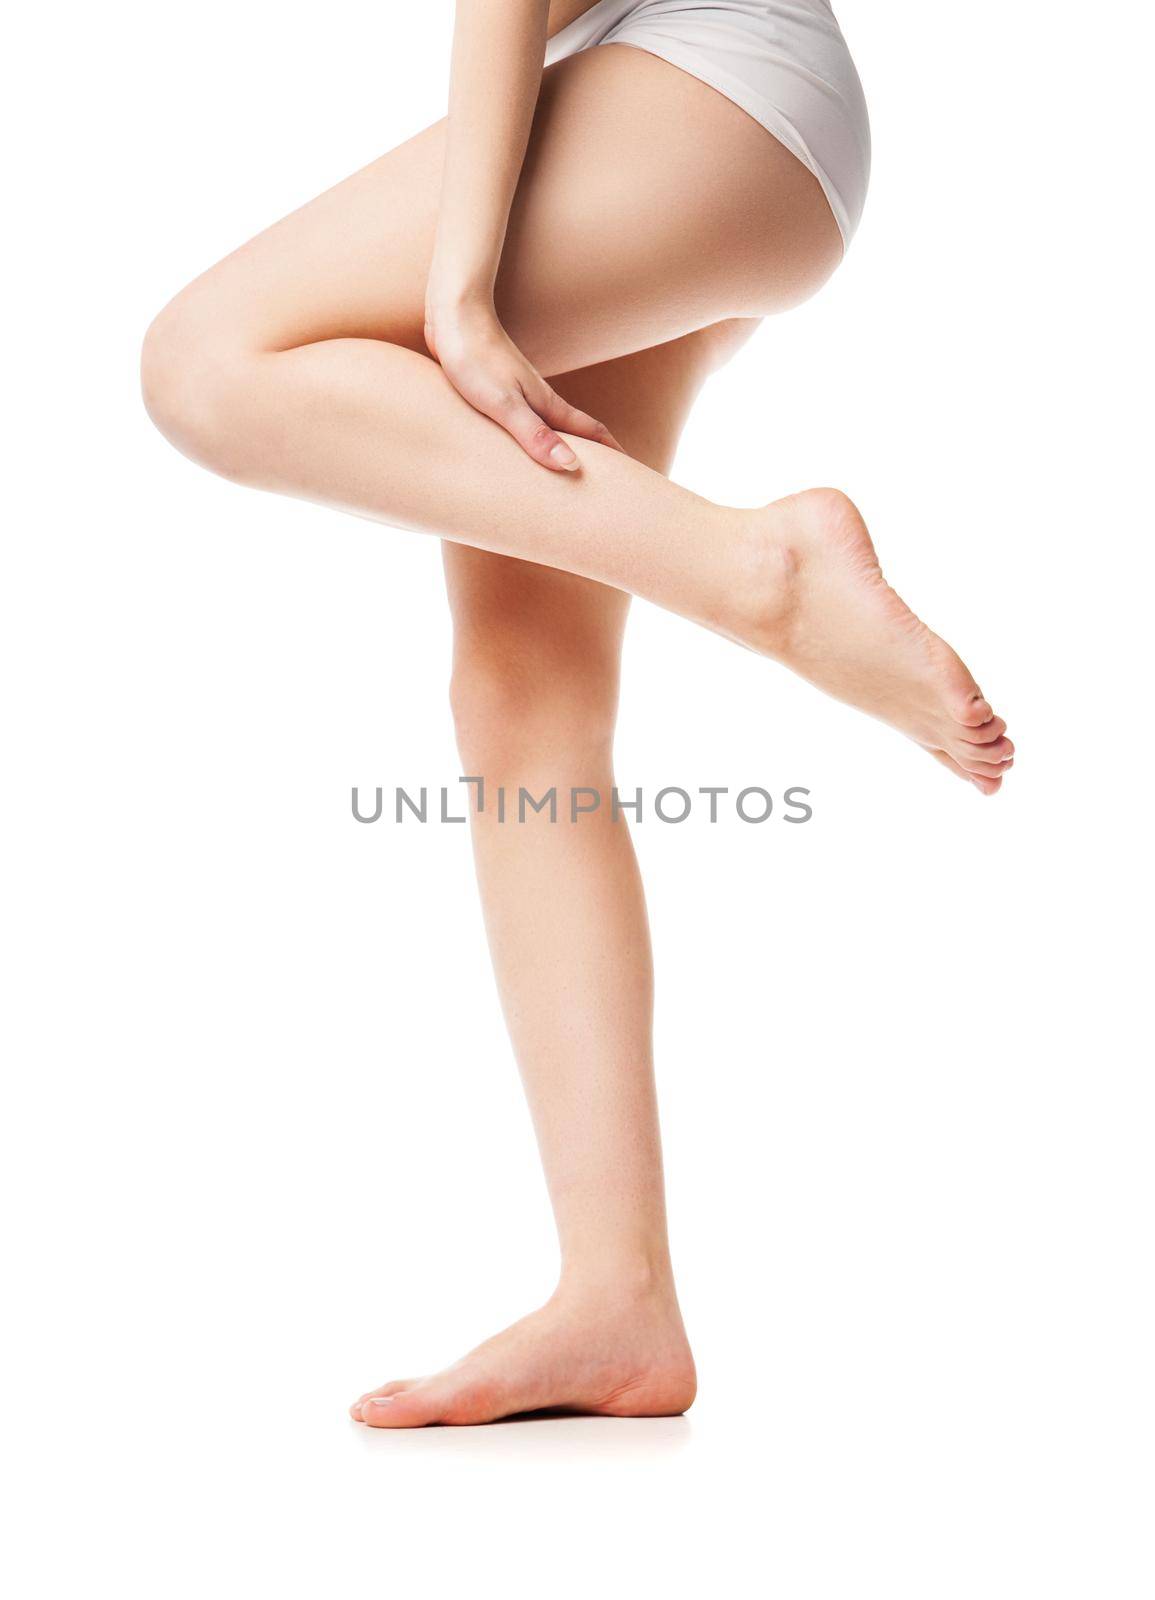 Beautiful wet feet, women legs on white background by Julenochek